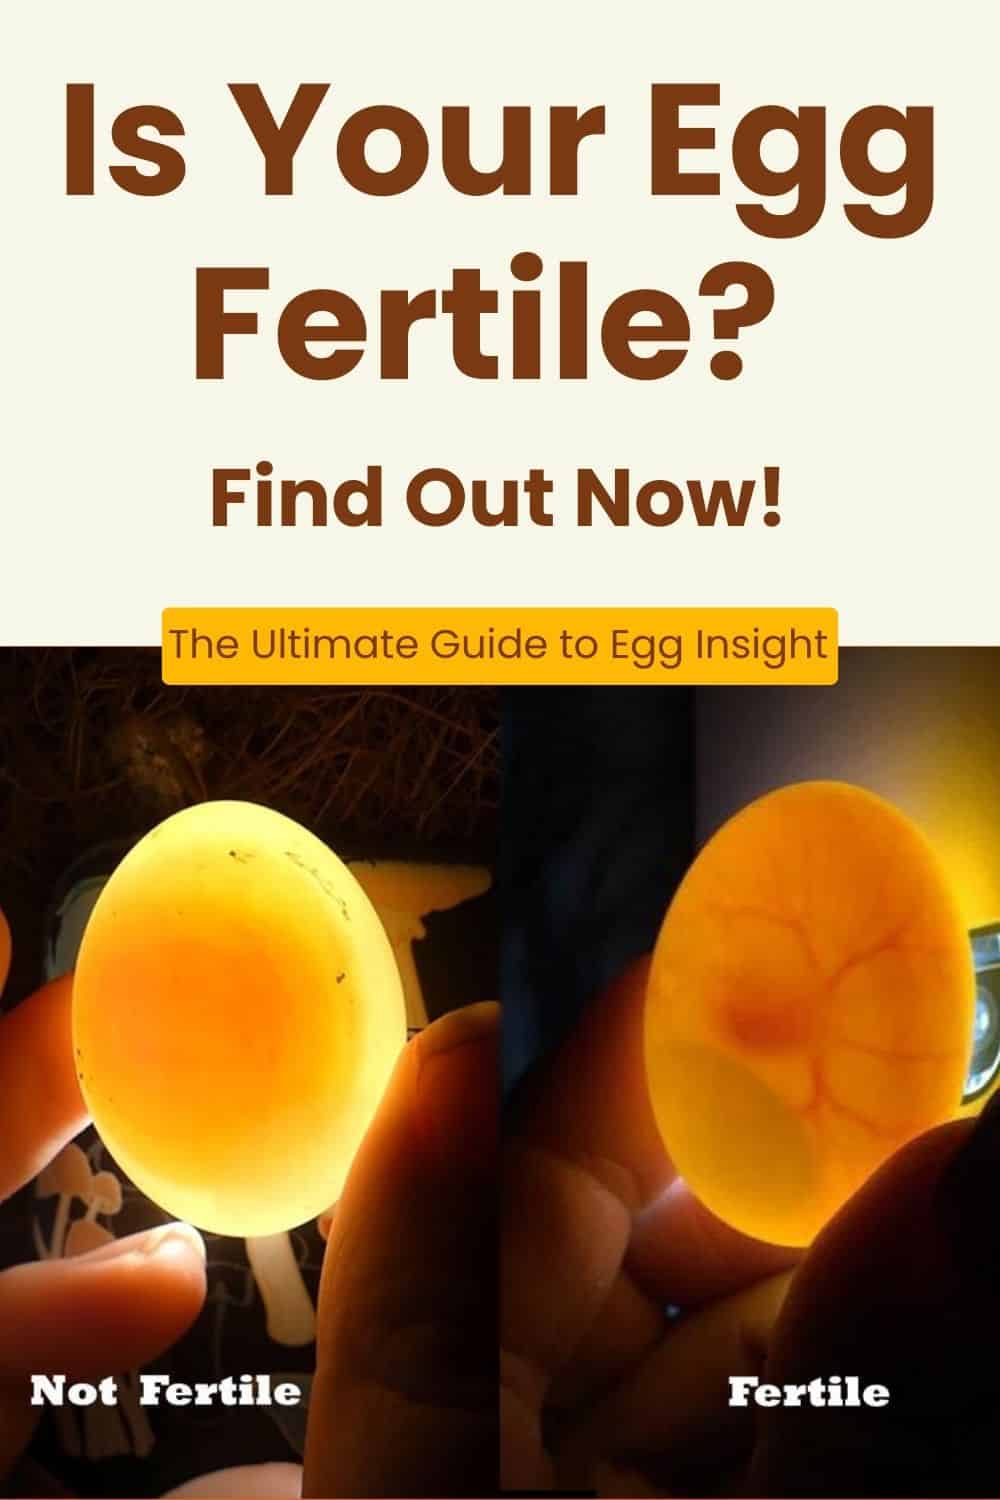 fertile egg vs infertile egg